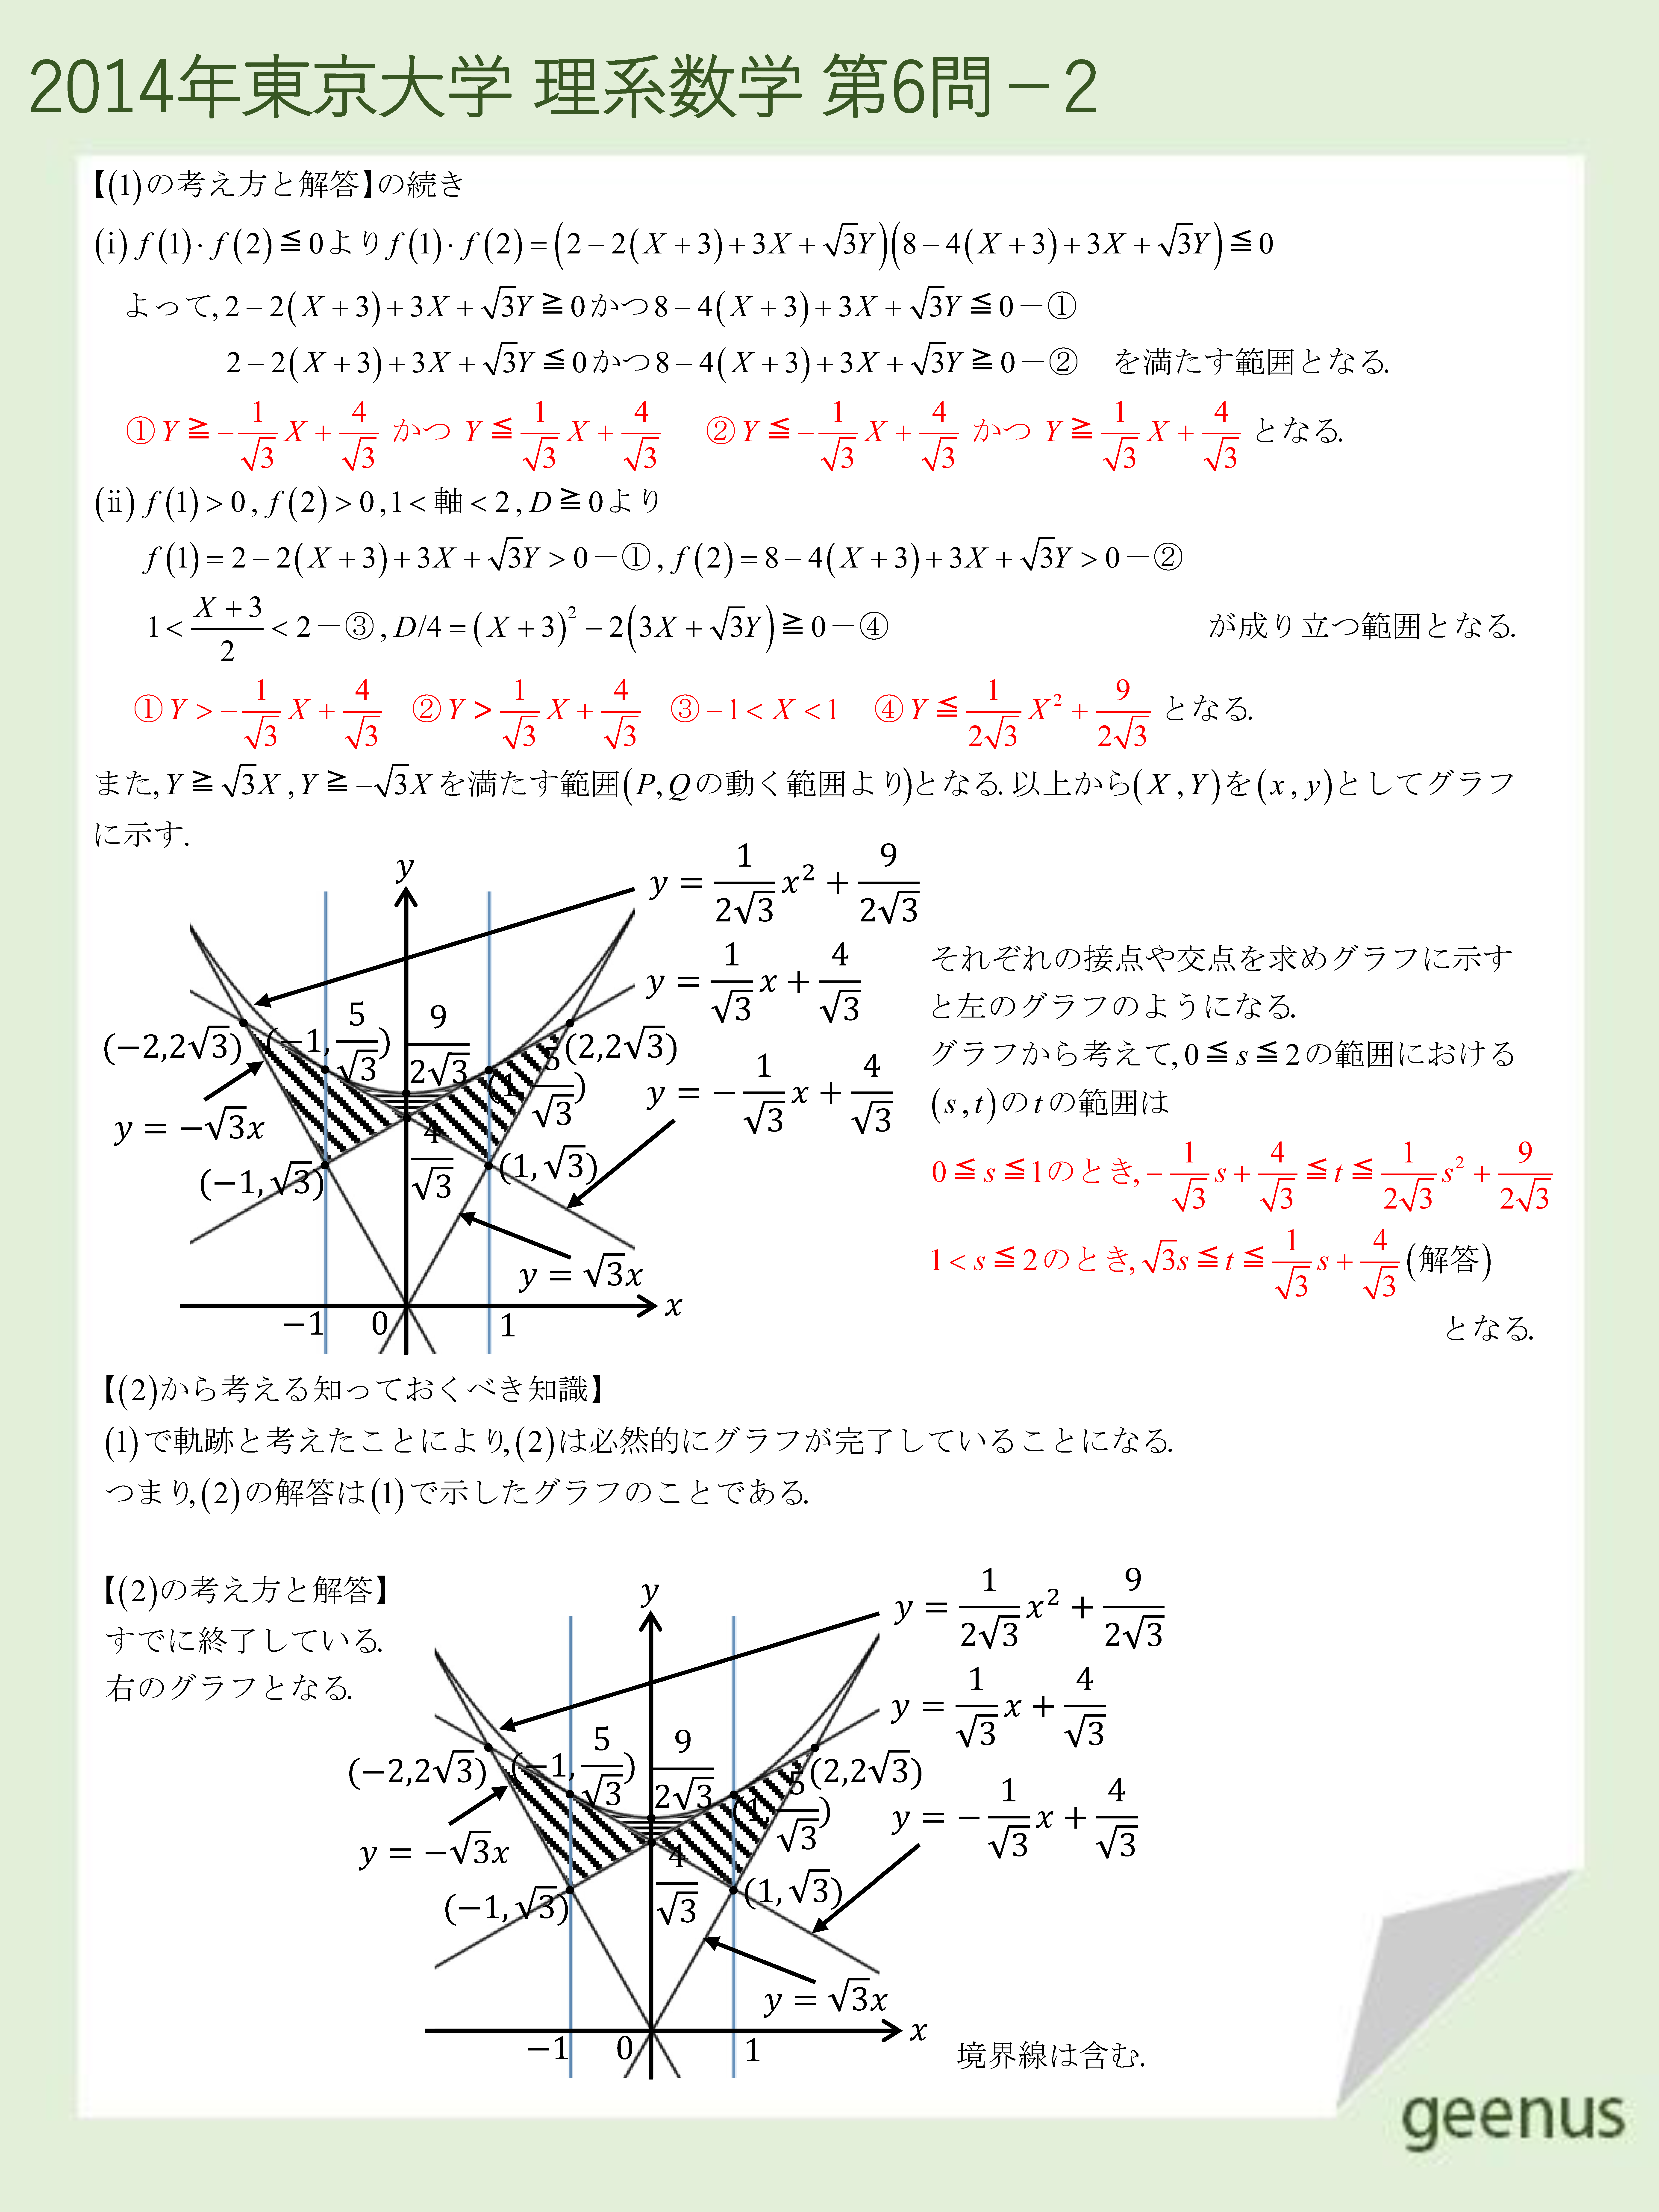 東大理系数学2014年第６問の解説2